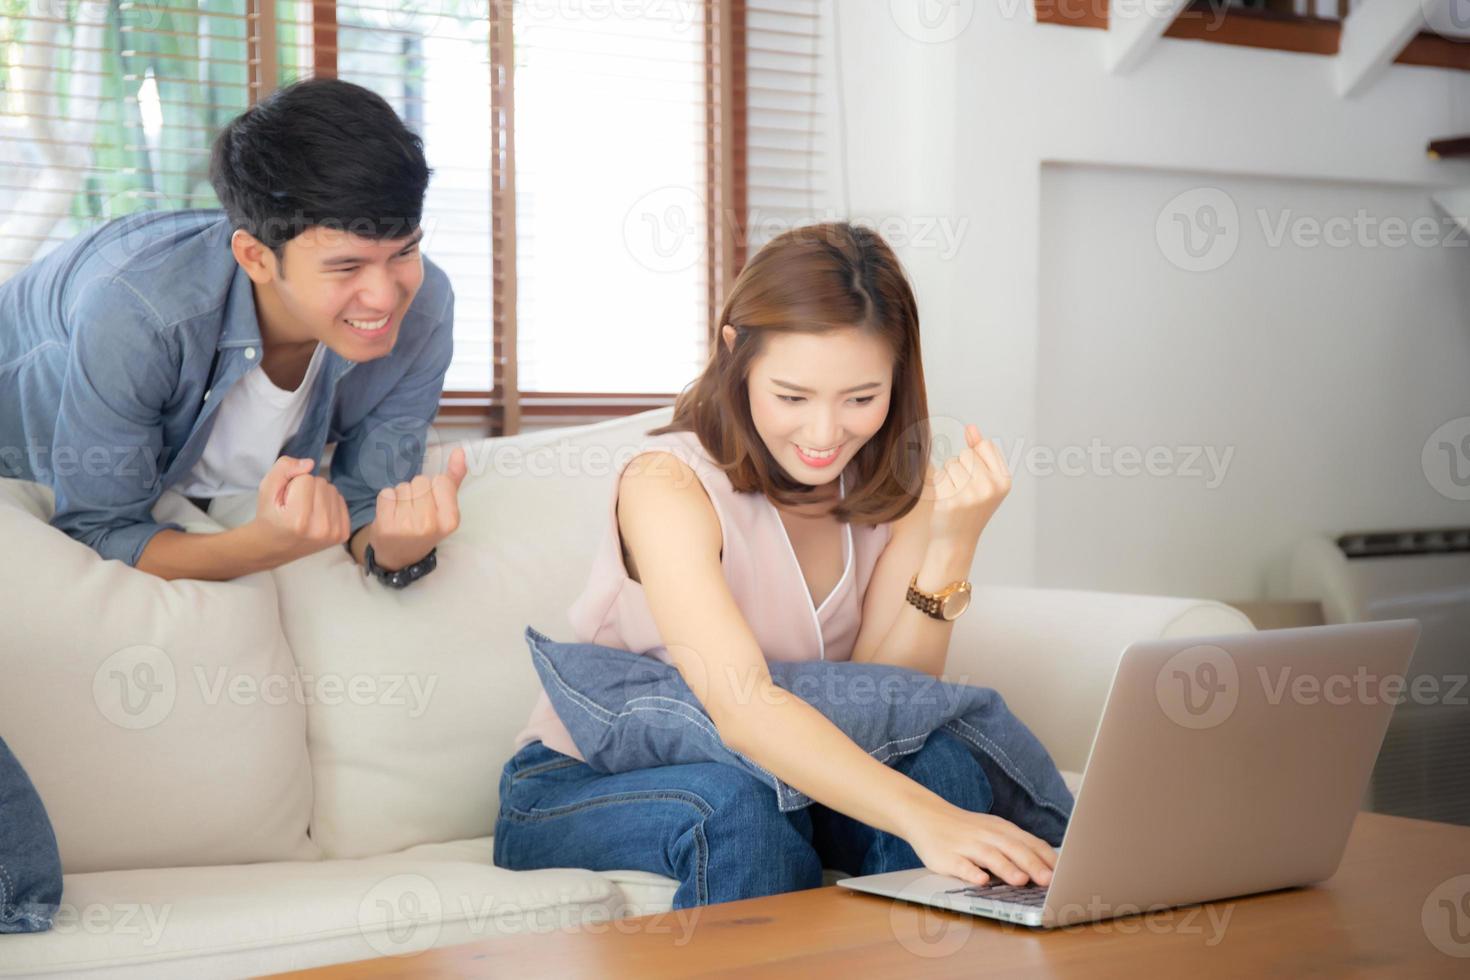 beau portrait asiatique jeune couple travaillant sur un ordinateur portable avec sourire et heureux assis sur un canapé dans le salon, homme et femme sur un canapé à l'aide d'un ordinateur portable avec un concept excité, d'affaires et de réussite. photo